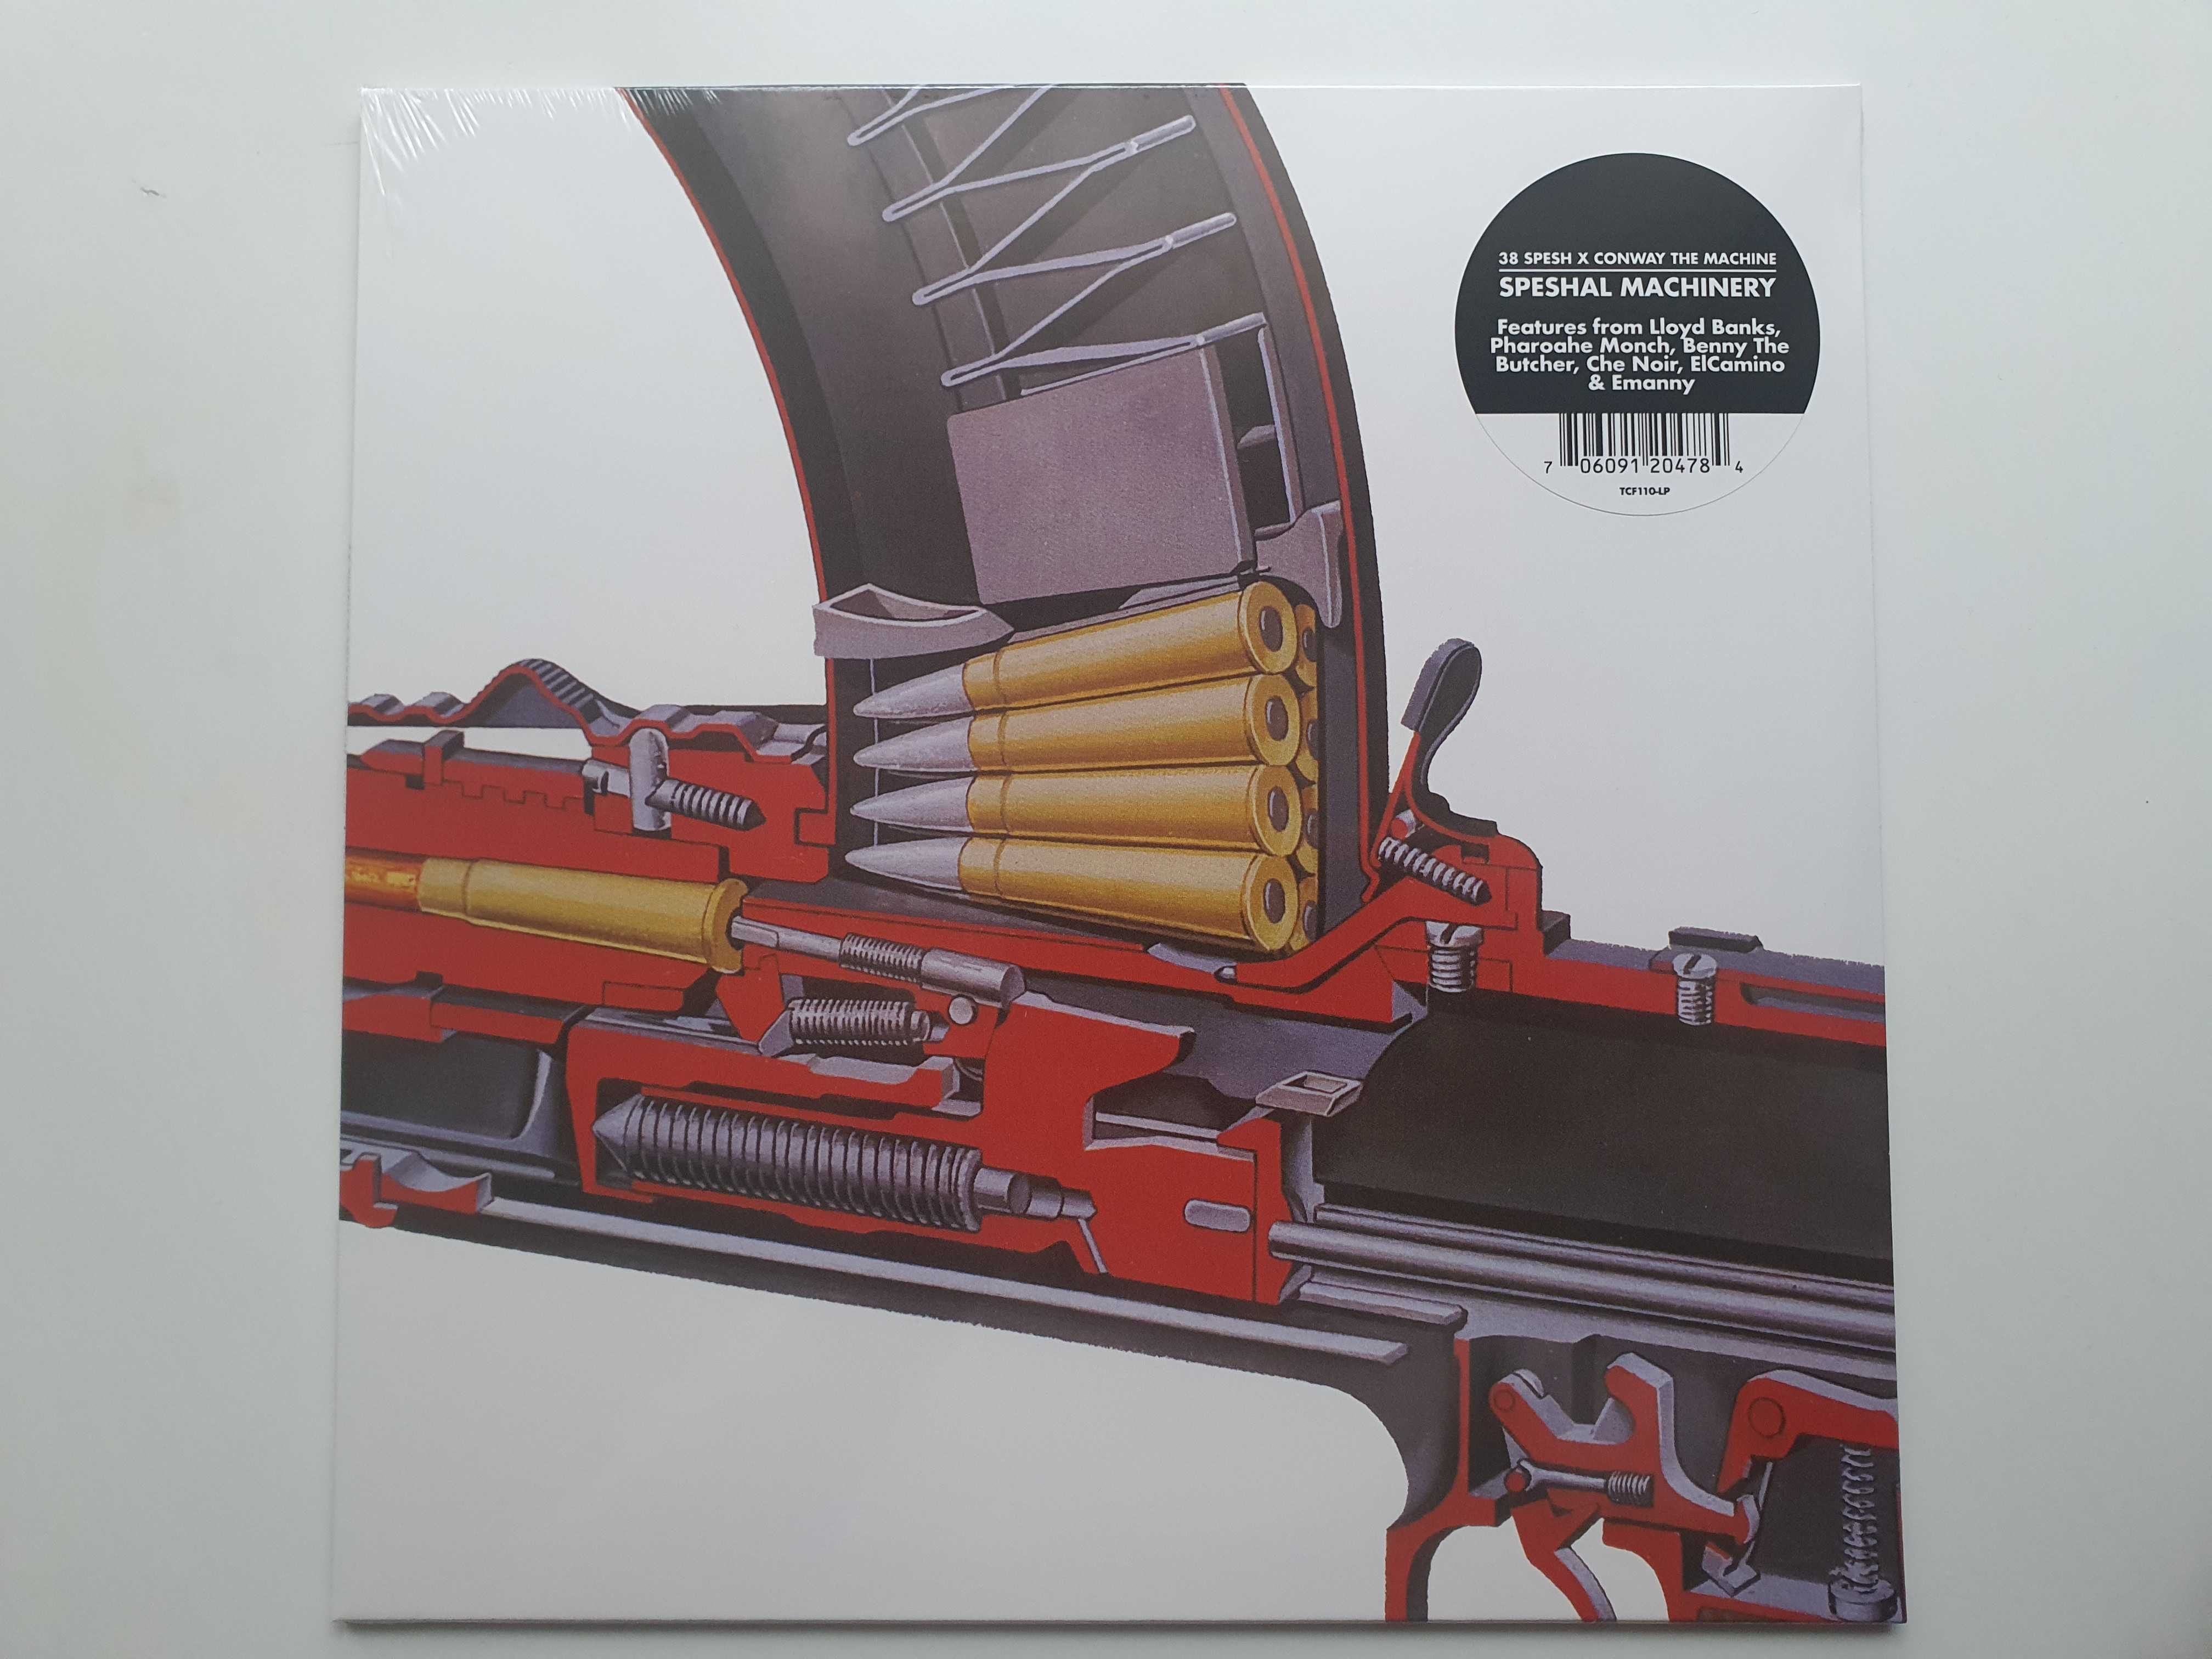 Conway The Machine - 38 Spesh - Speshal Machinery / Winyl / LP